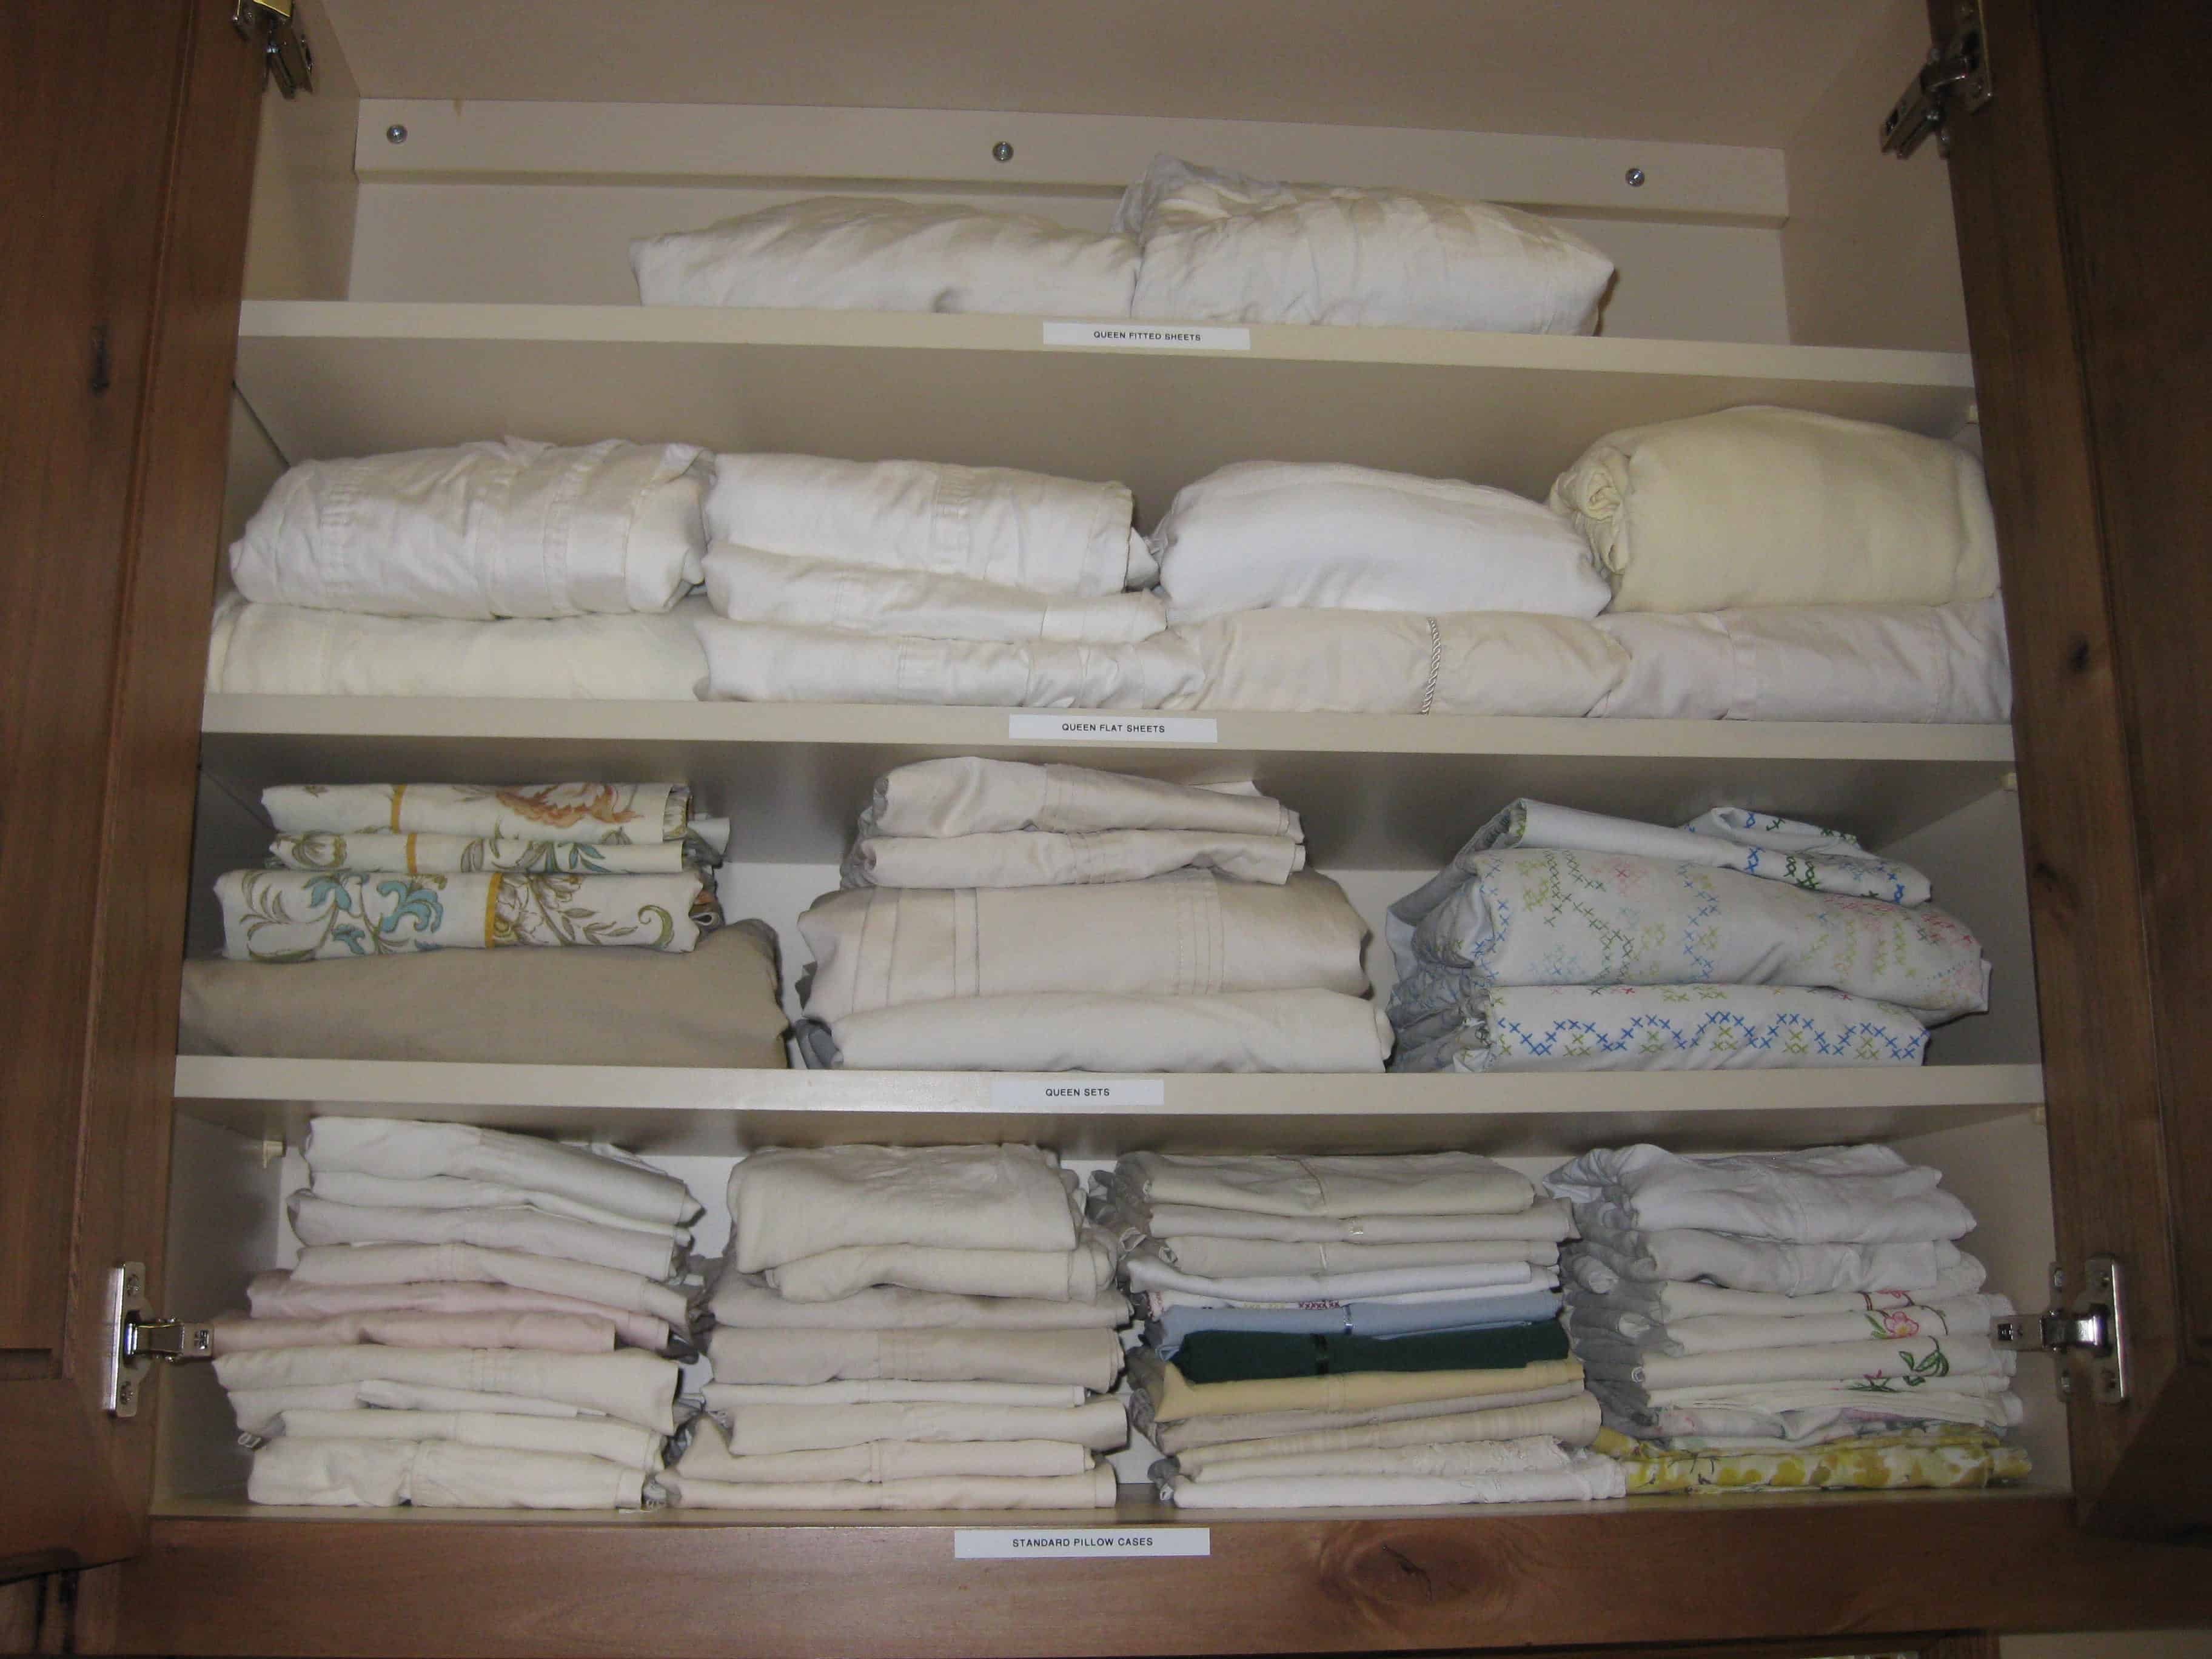 Organized Linen Closet - After